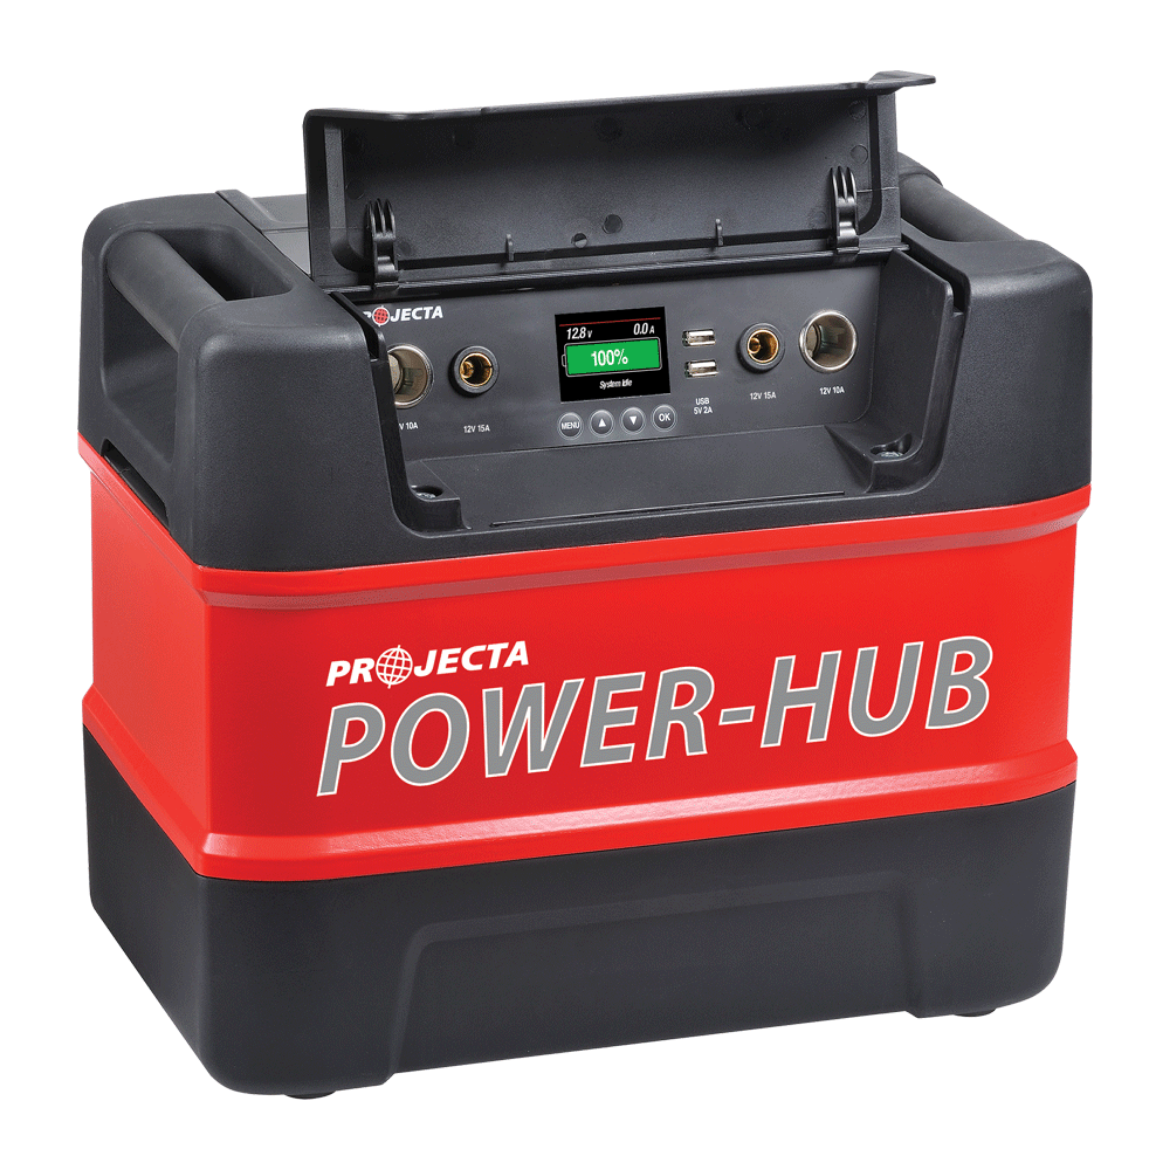 PH125 12VOLT PROJECTA PORTABLE POWER HUB BATTERY BOX - A1